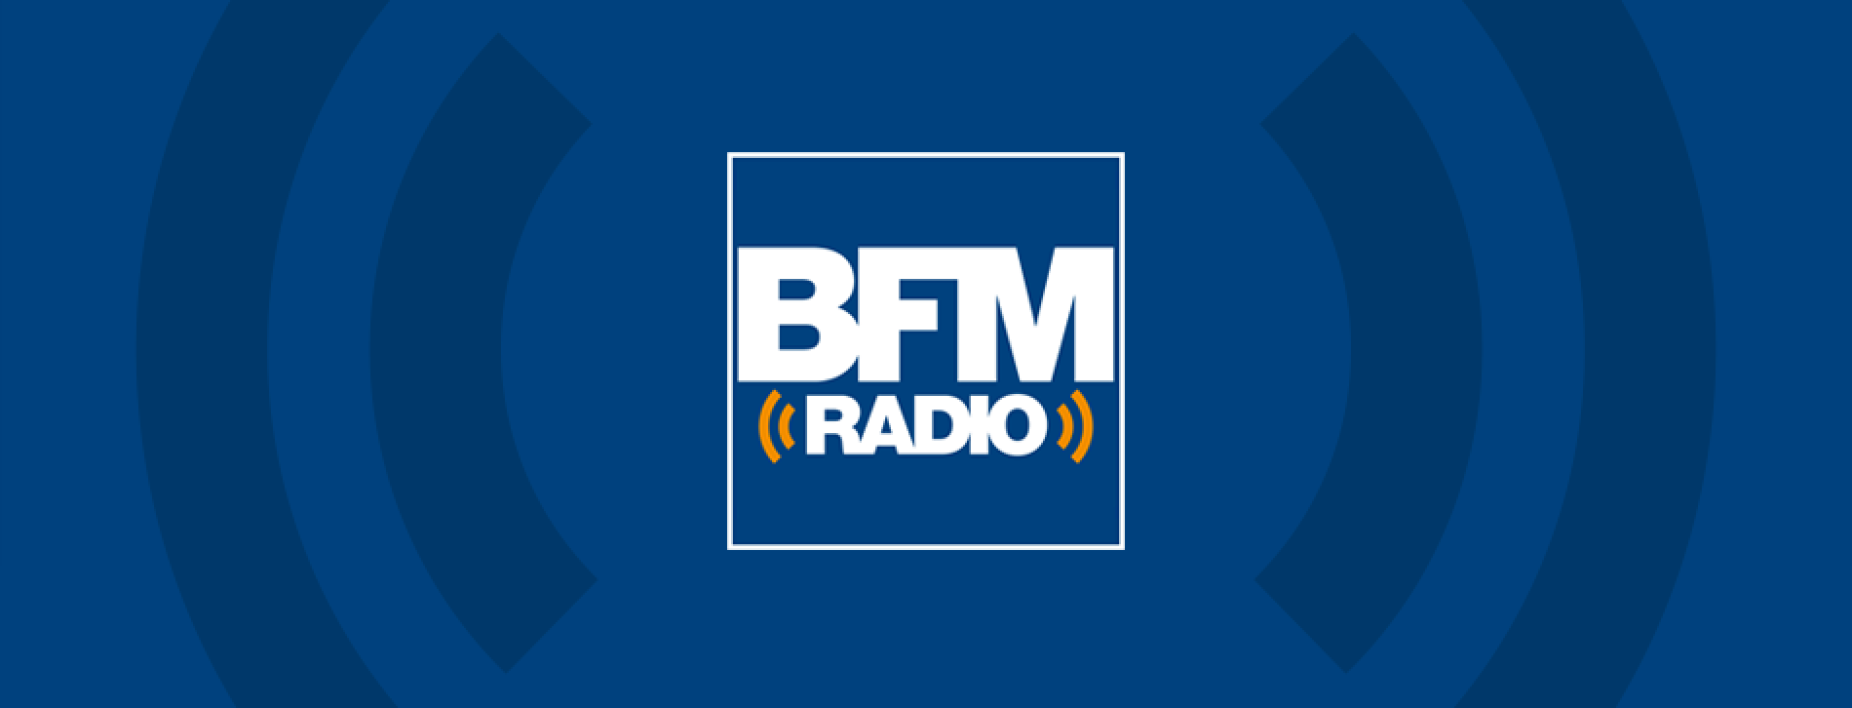 Le version audio de BFM TV émettra en DAB+ dès 2020.